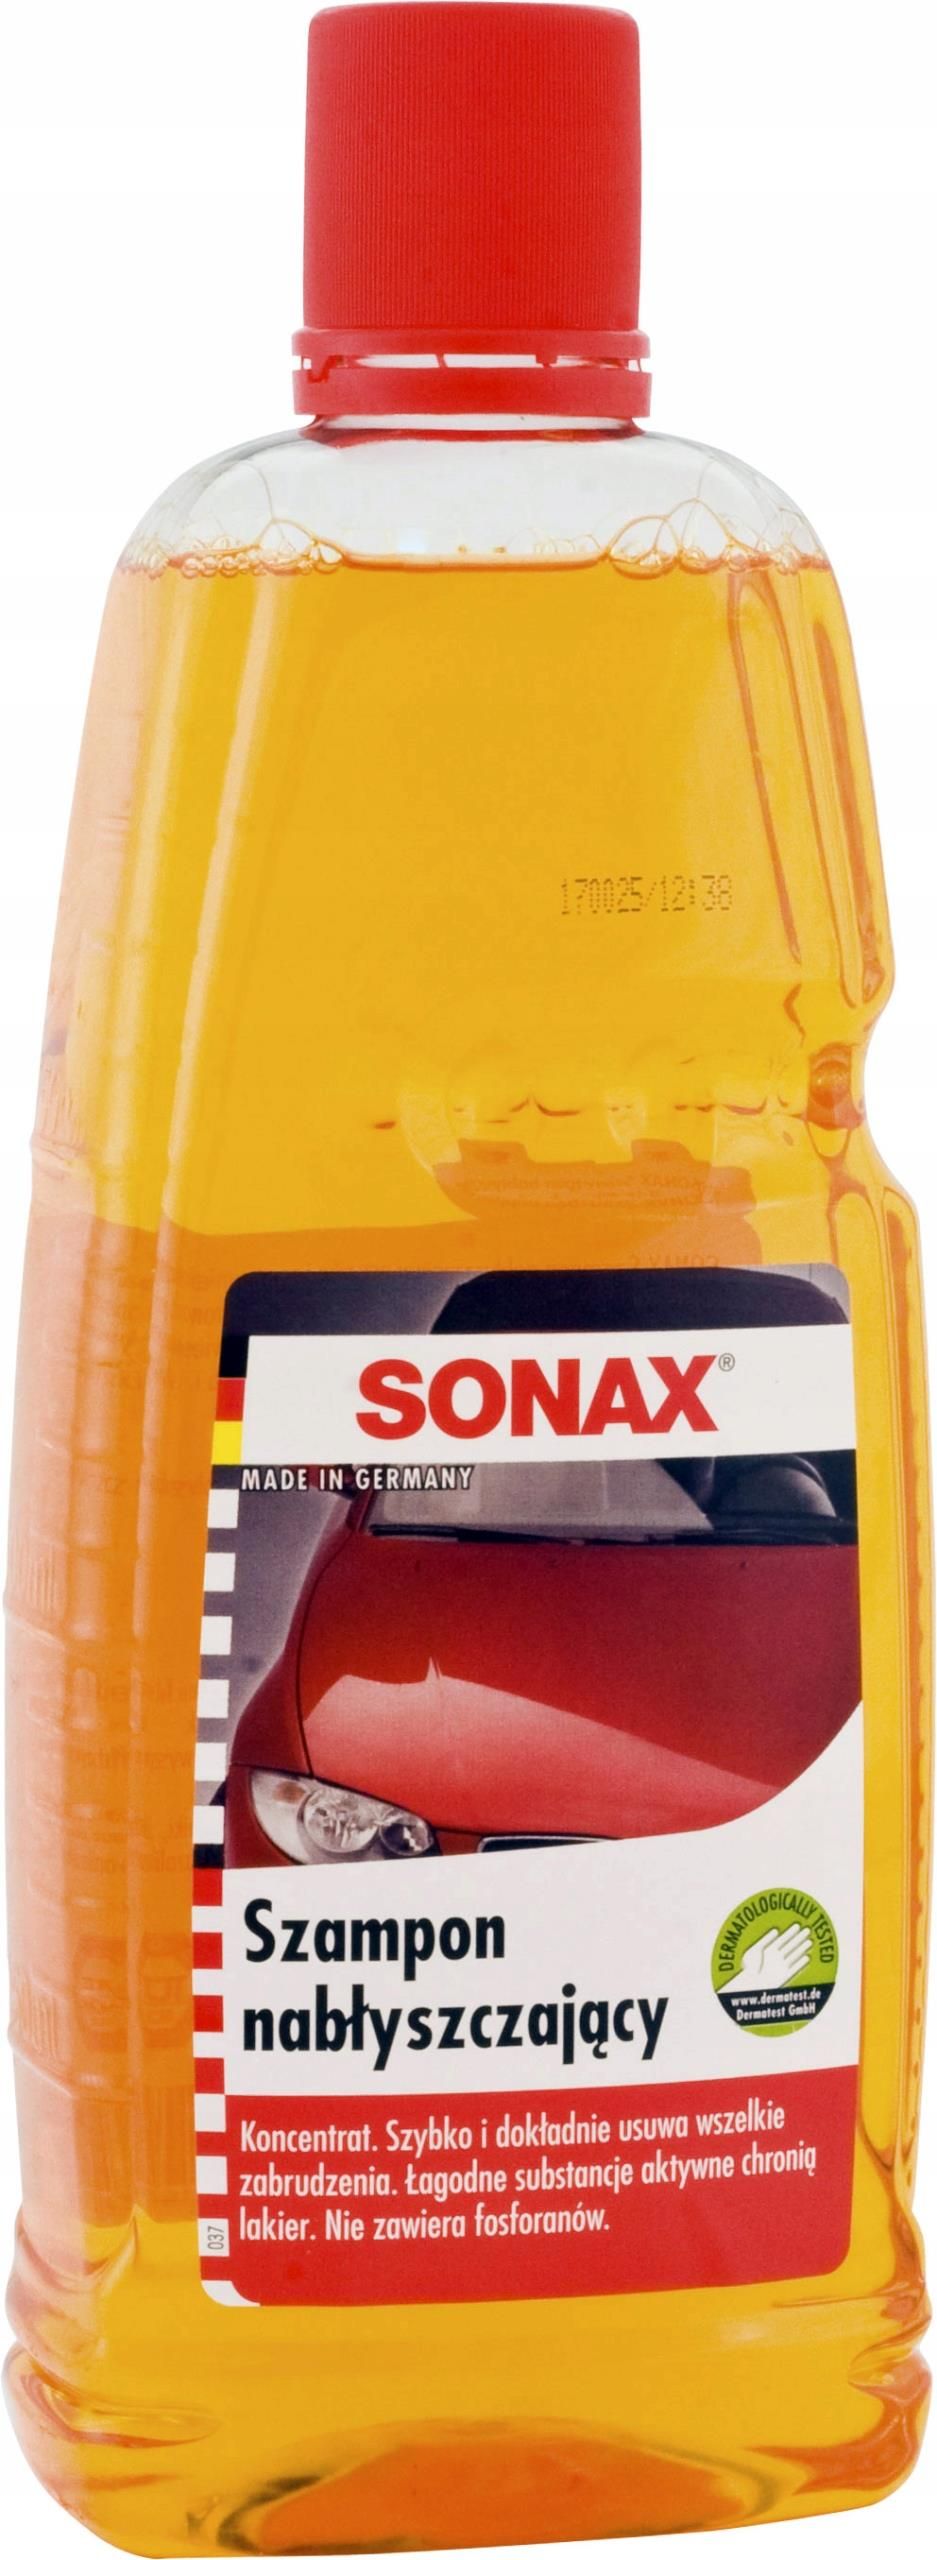 szampon samochodowy sonax opinie